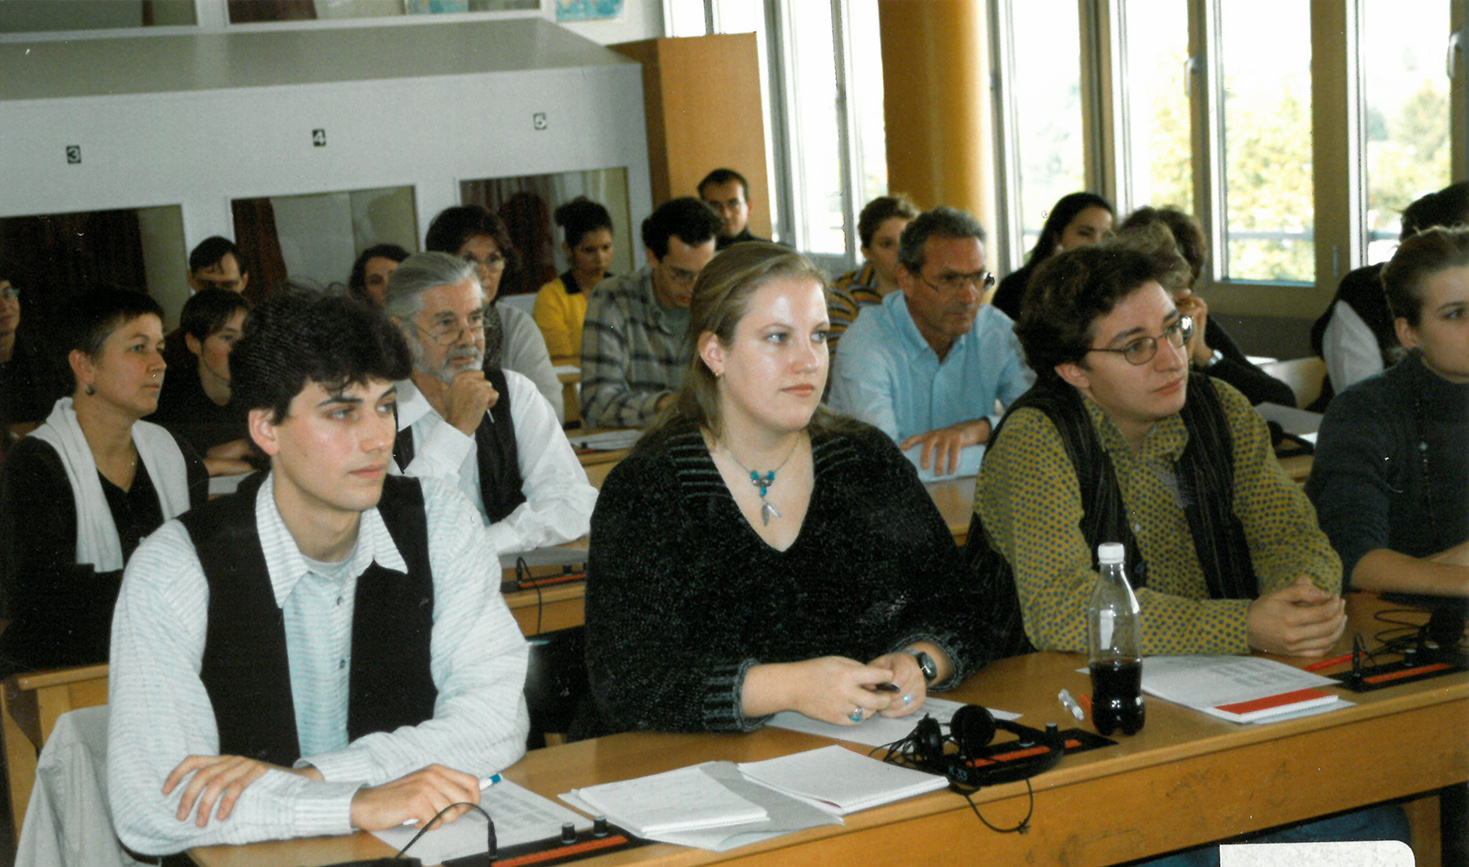 Unterricht 1987 Lorenz Mohler als Student